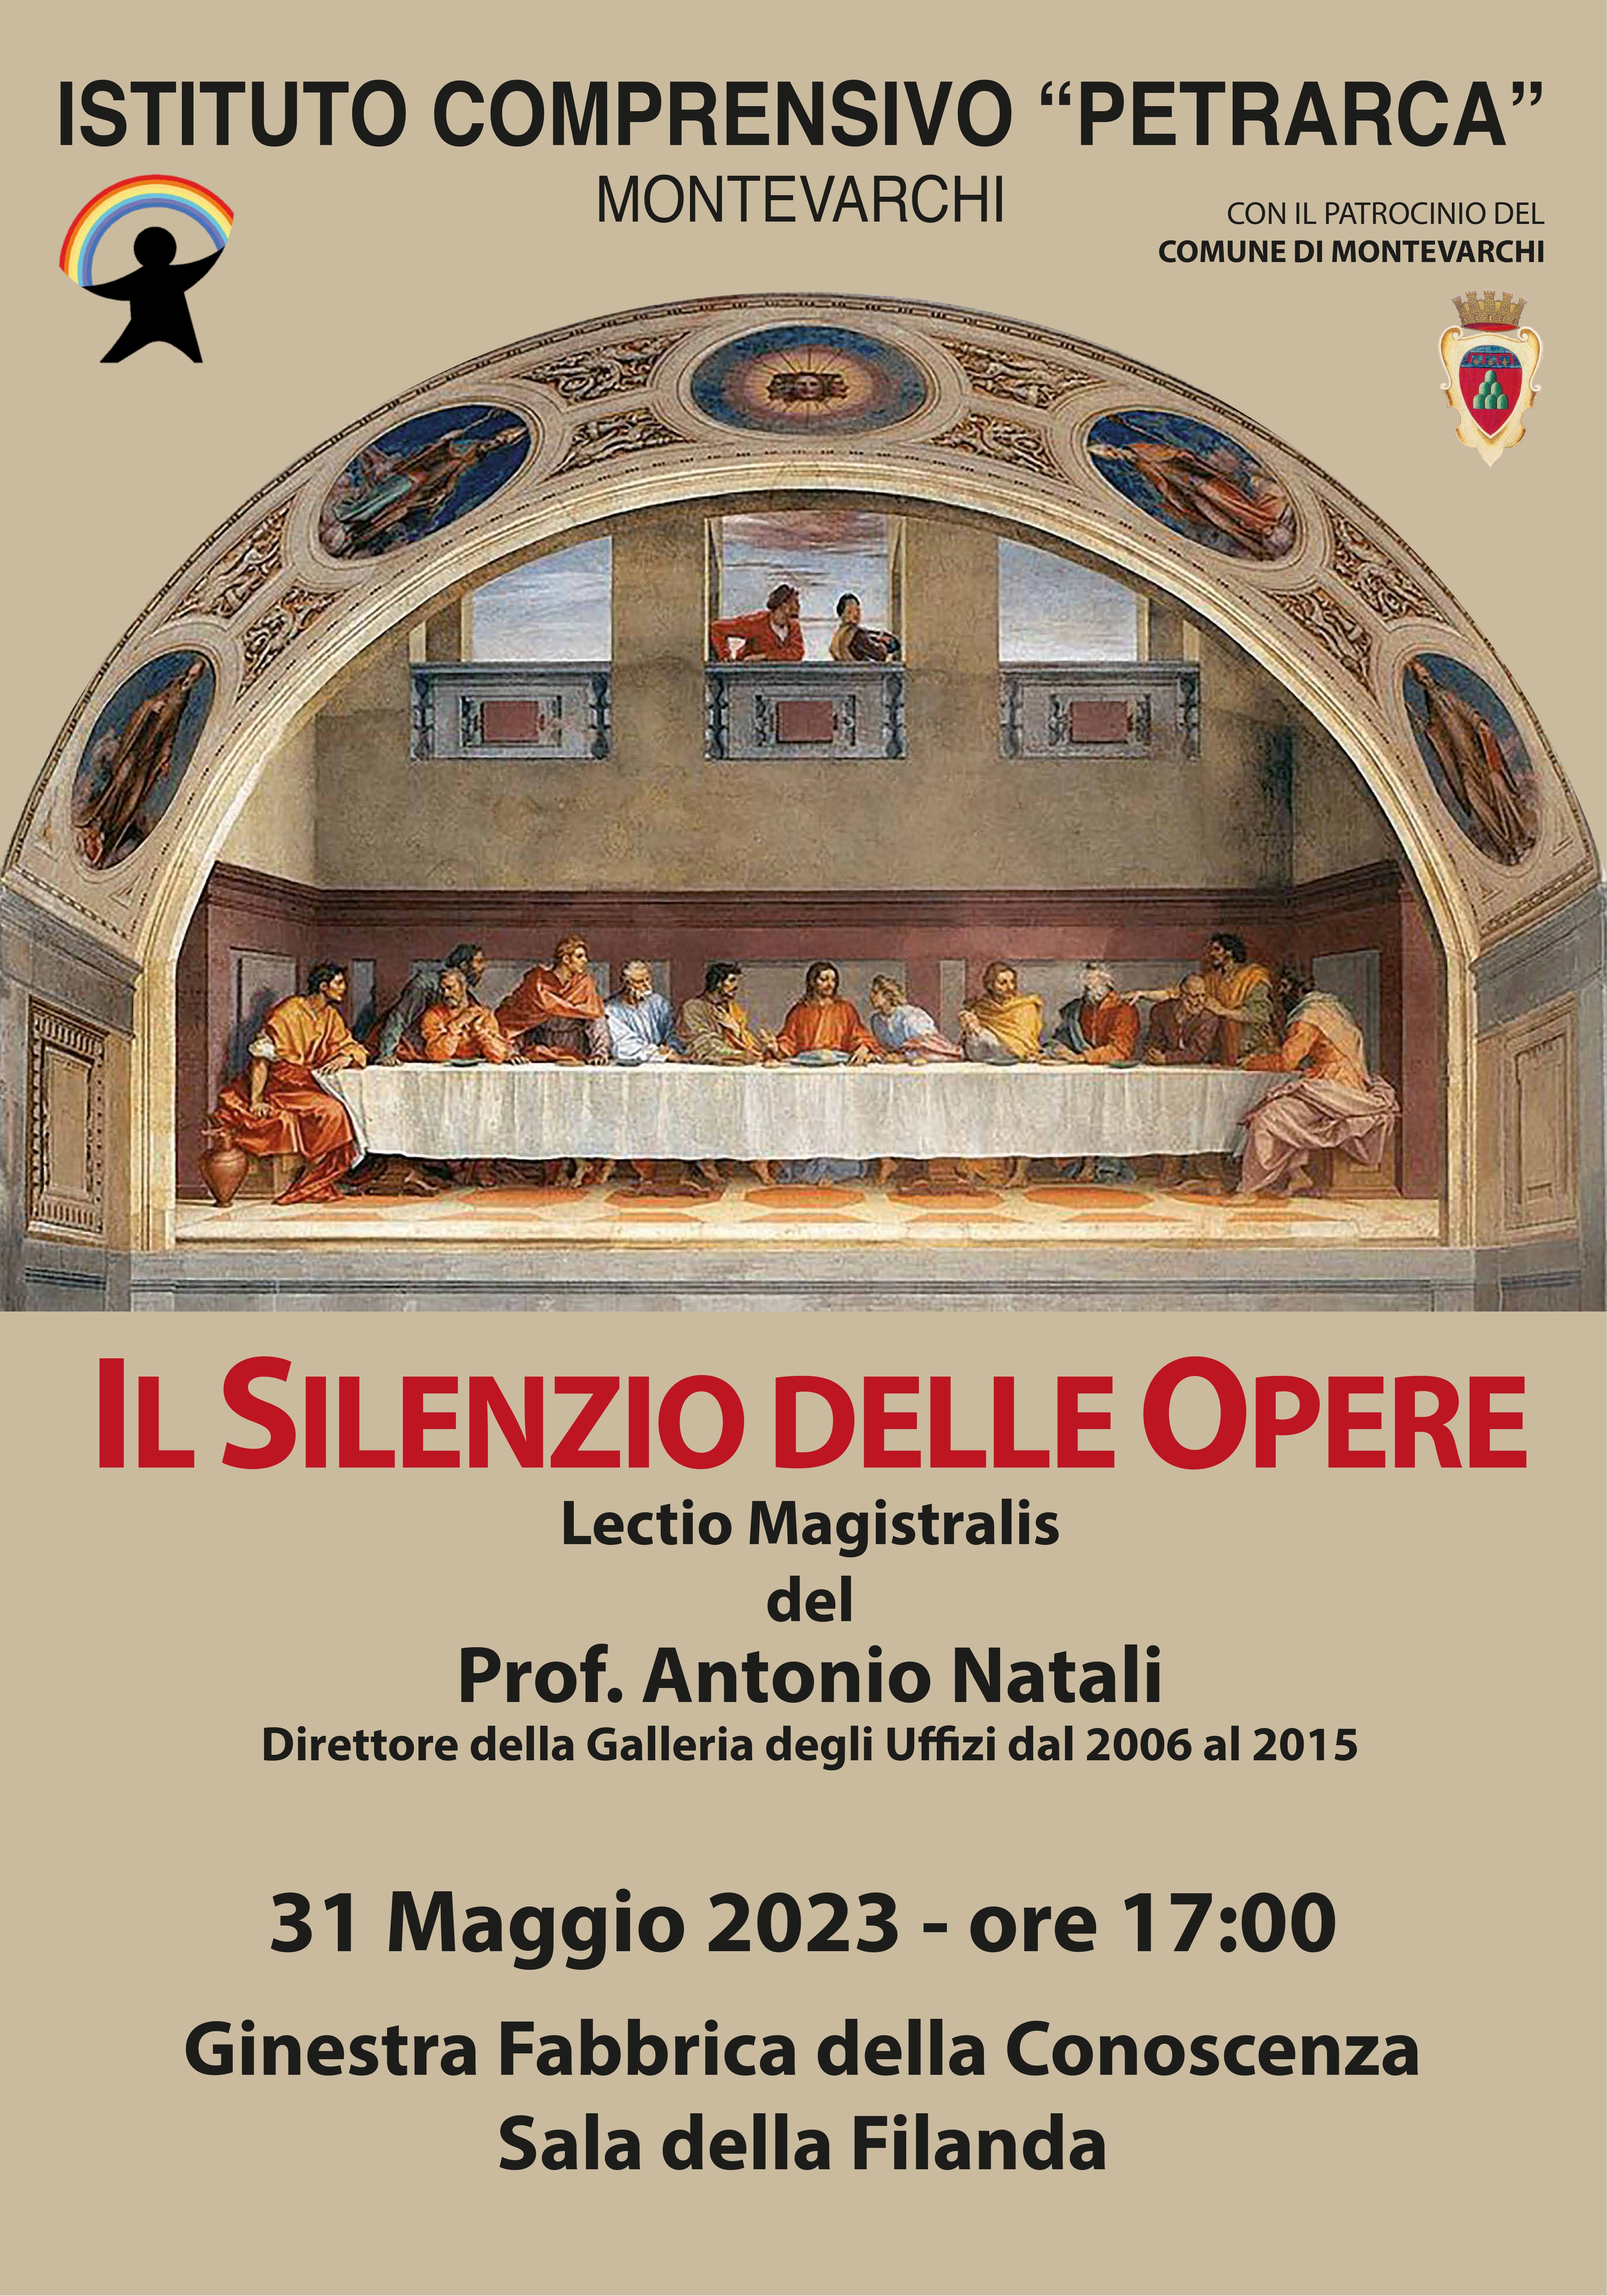 Il Silenzio delle Opere - Prof. Antonio Natali.jpg